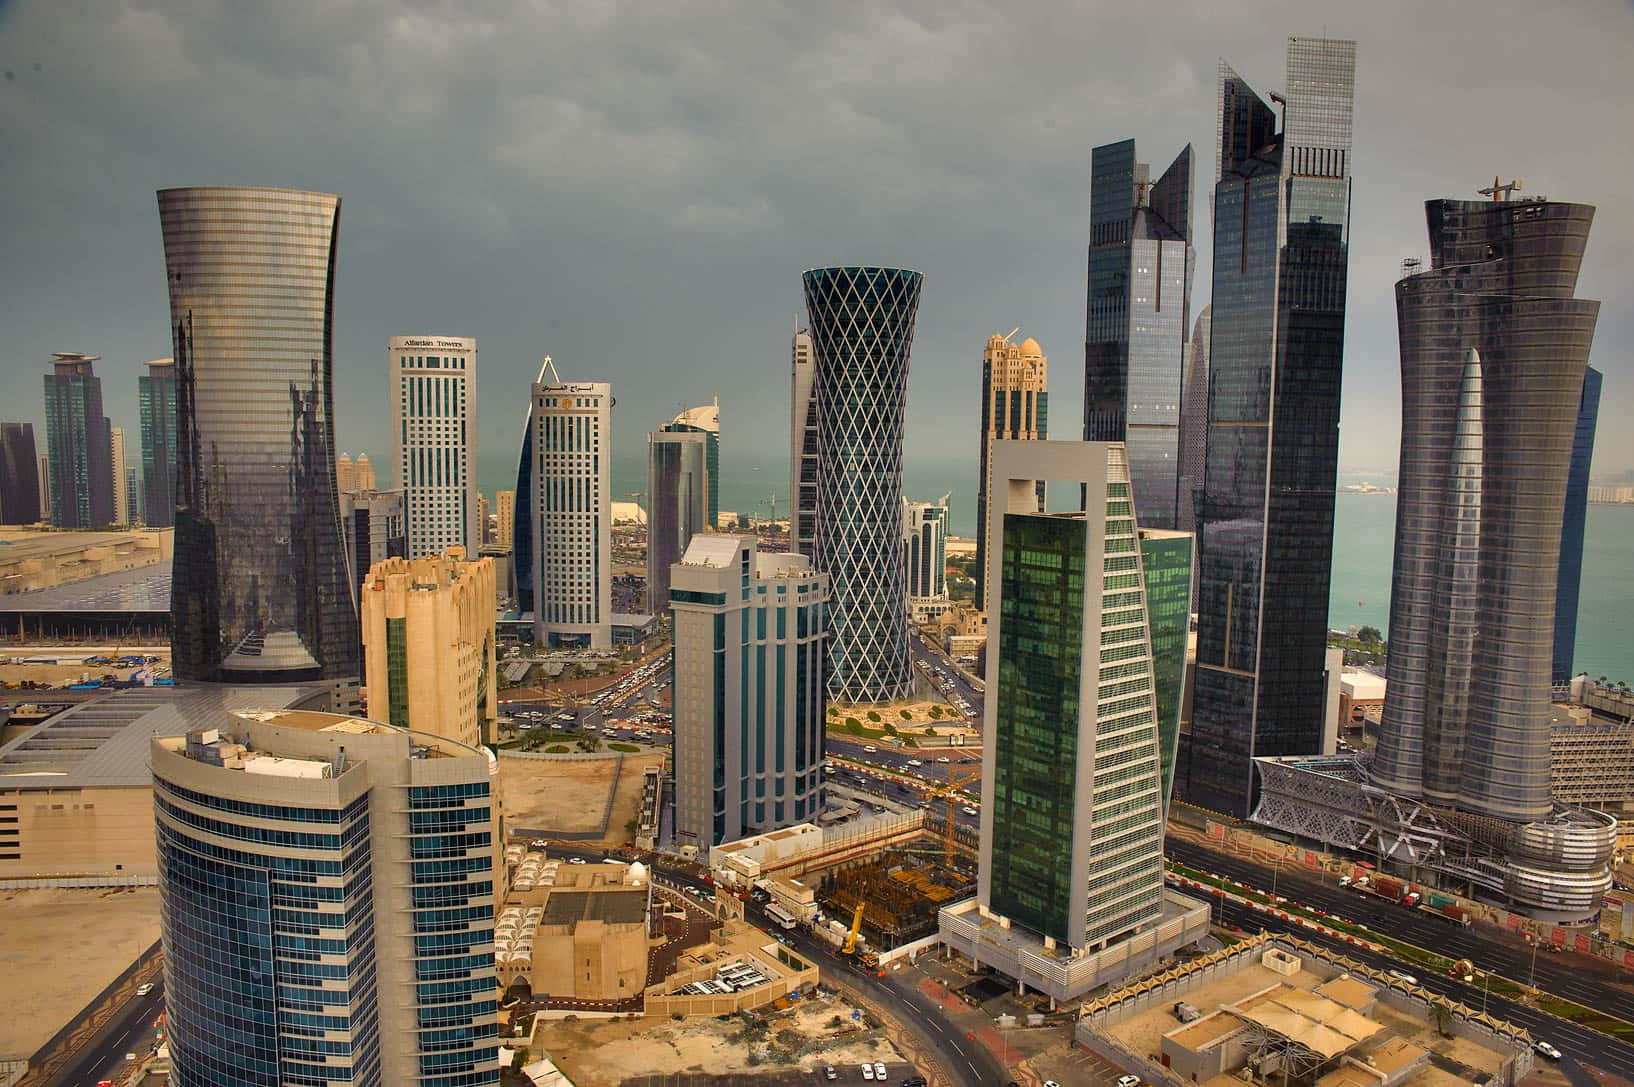 –benvenuti In Qatar, Un Paese Della Penisola Arabica